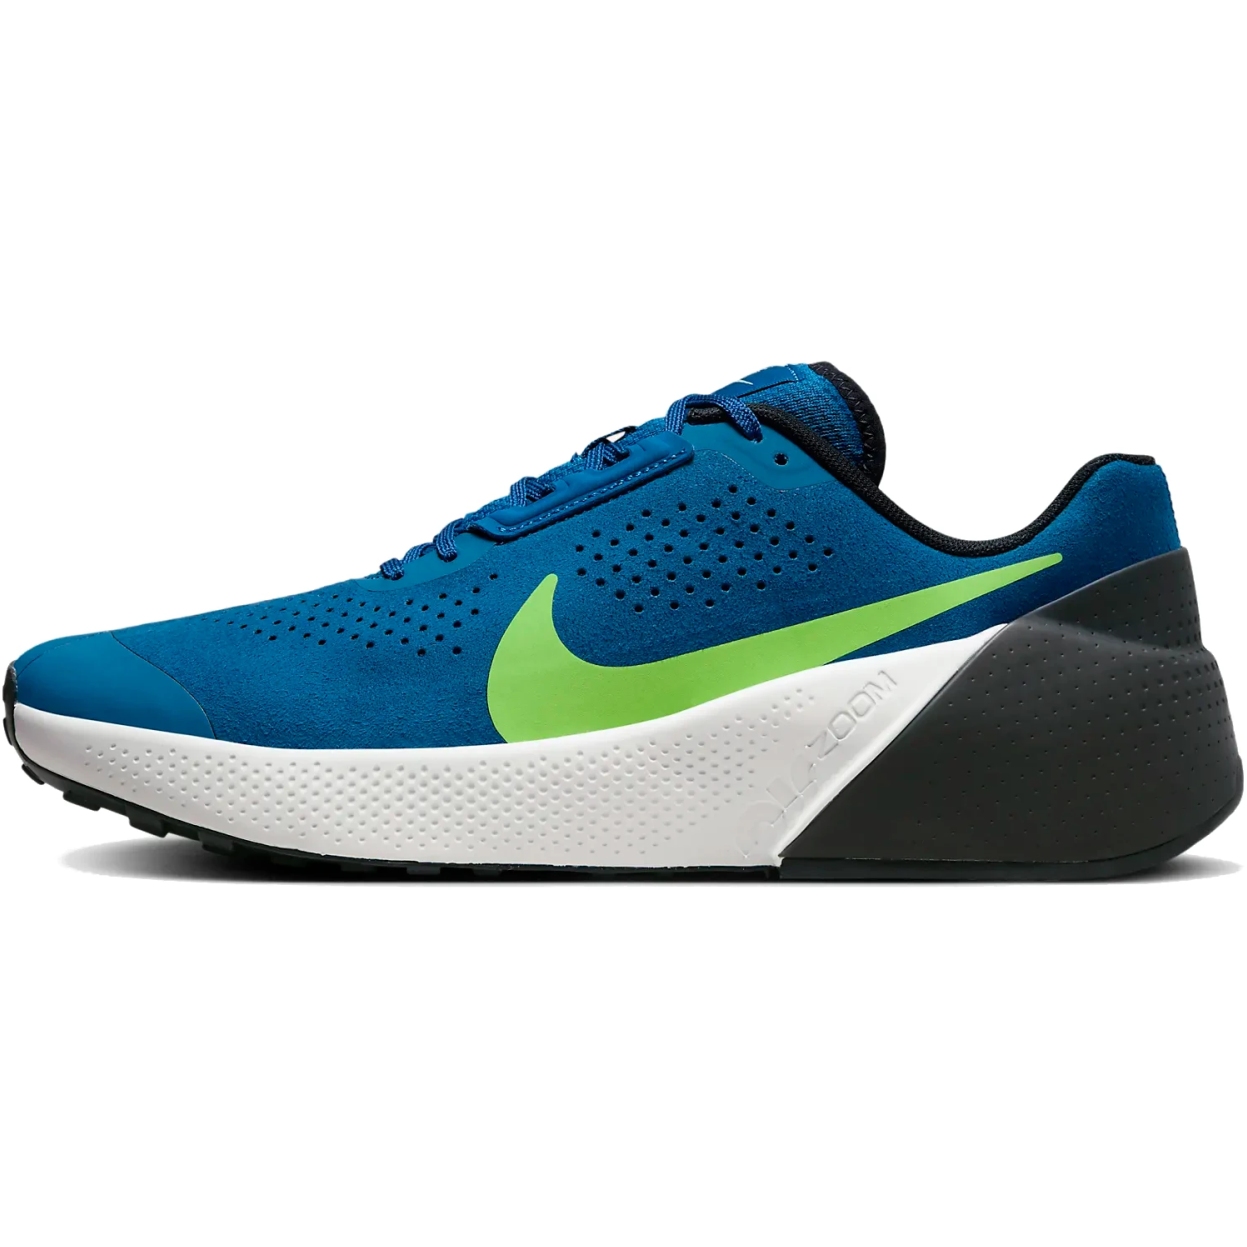 Produktbild von Nike Air Zoom TR 1 Workout-Schuhe Herren - court blue/black/platinum tint/green strike DX9016-400